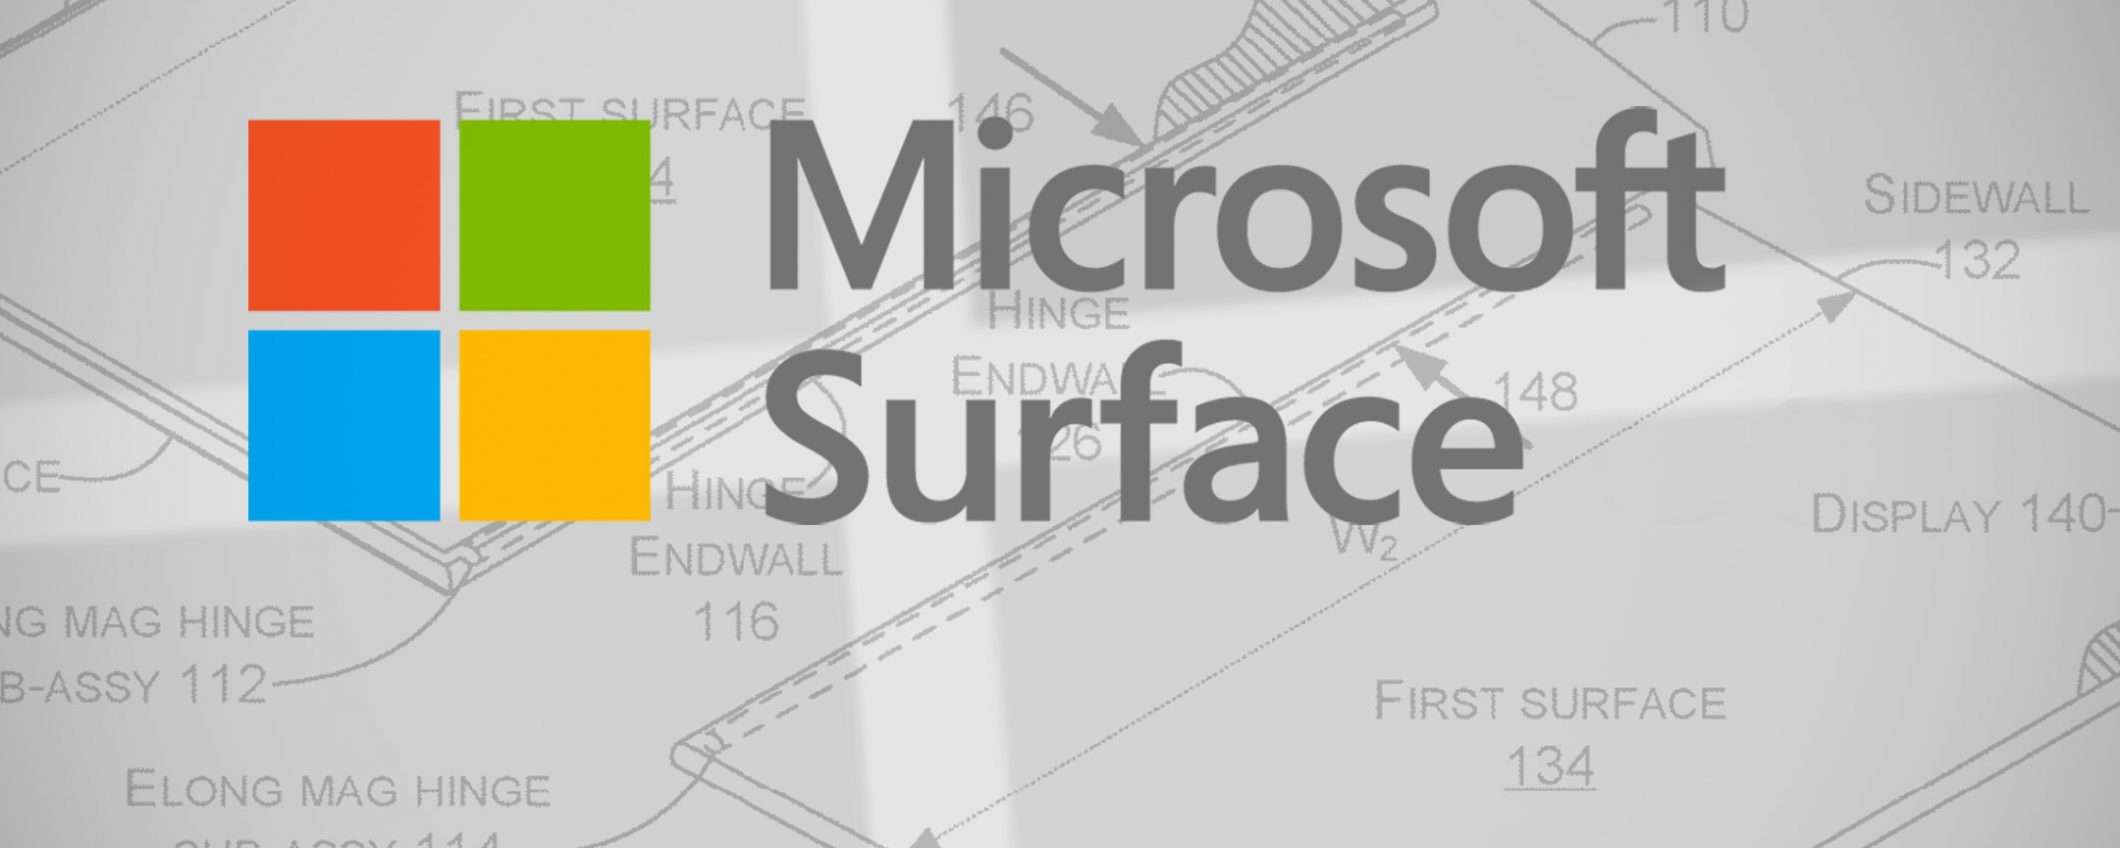 Un Surface dual screen e modulare per Microsoft?